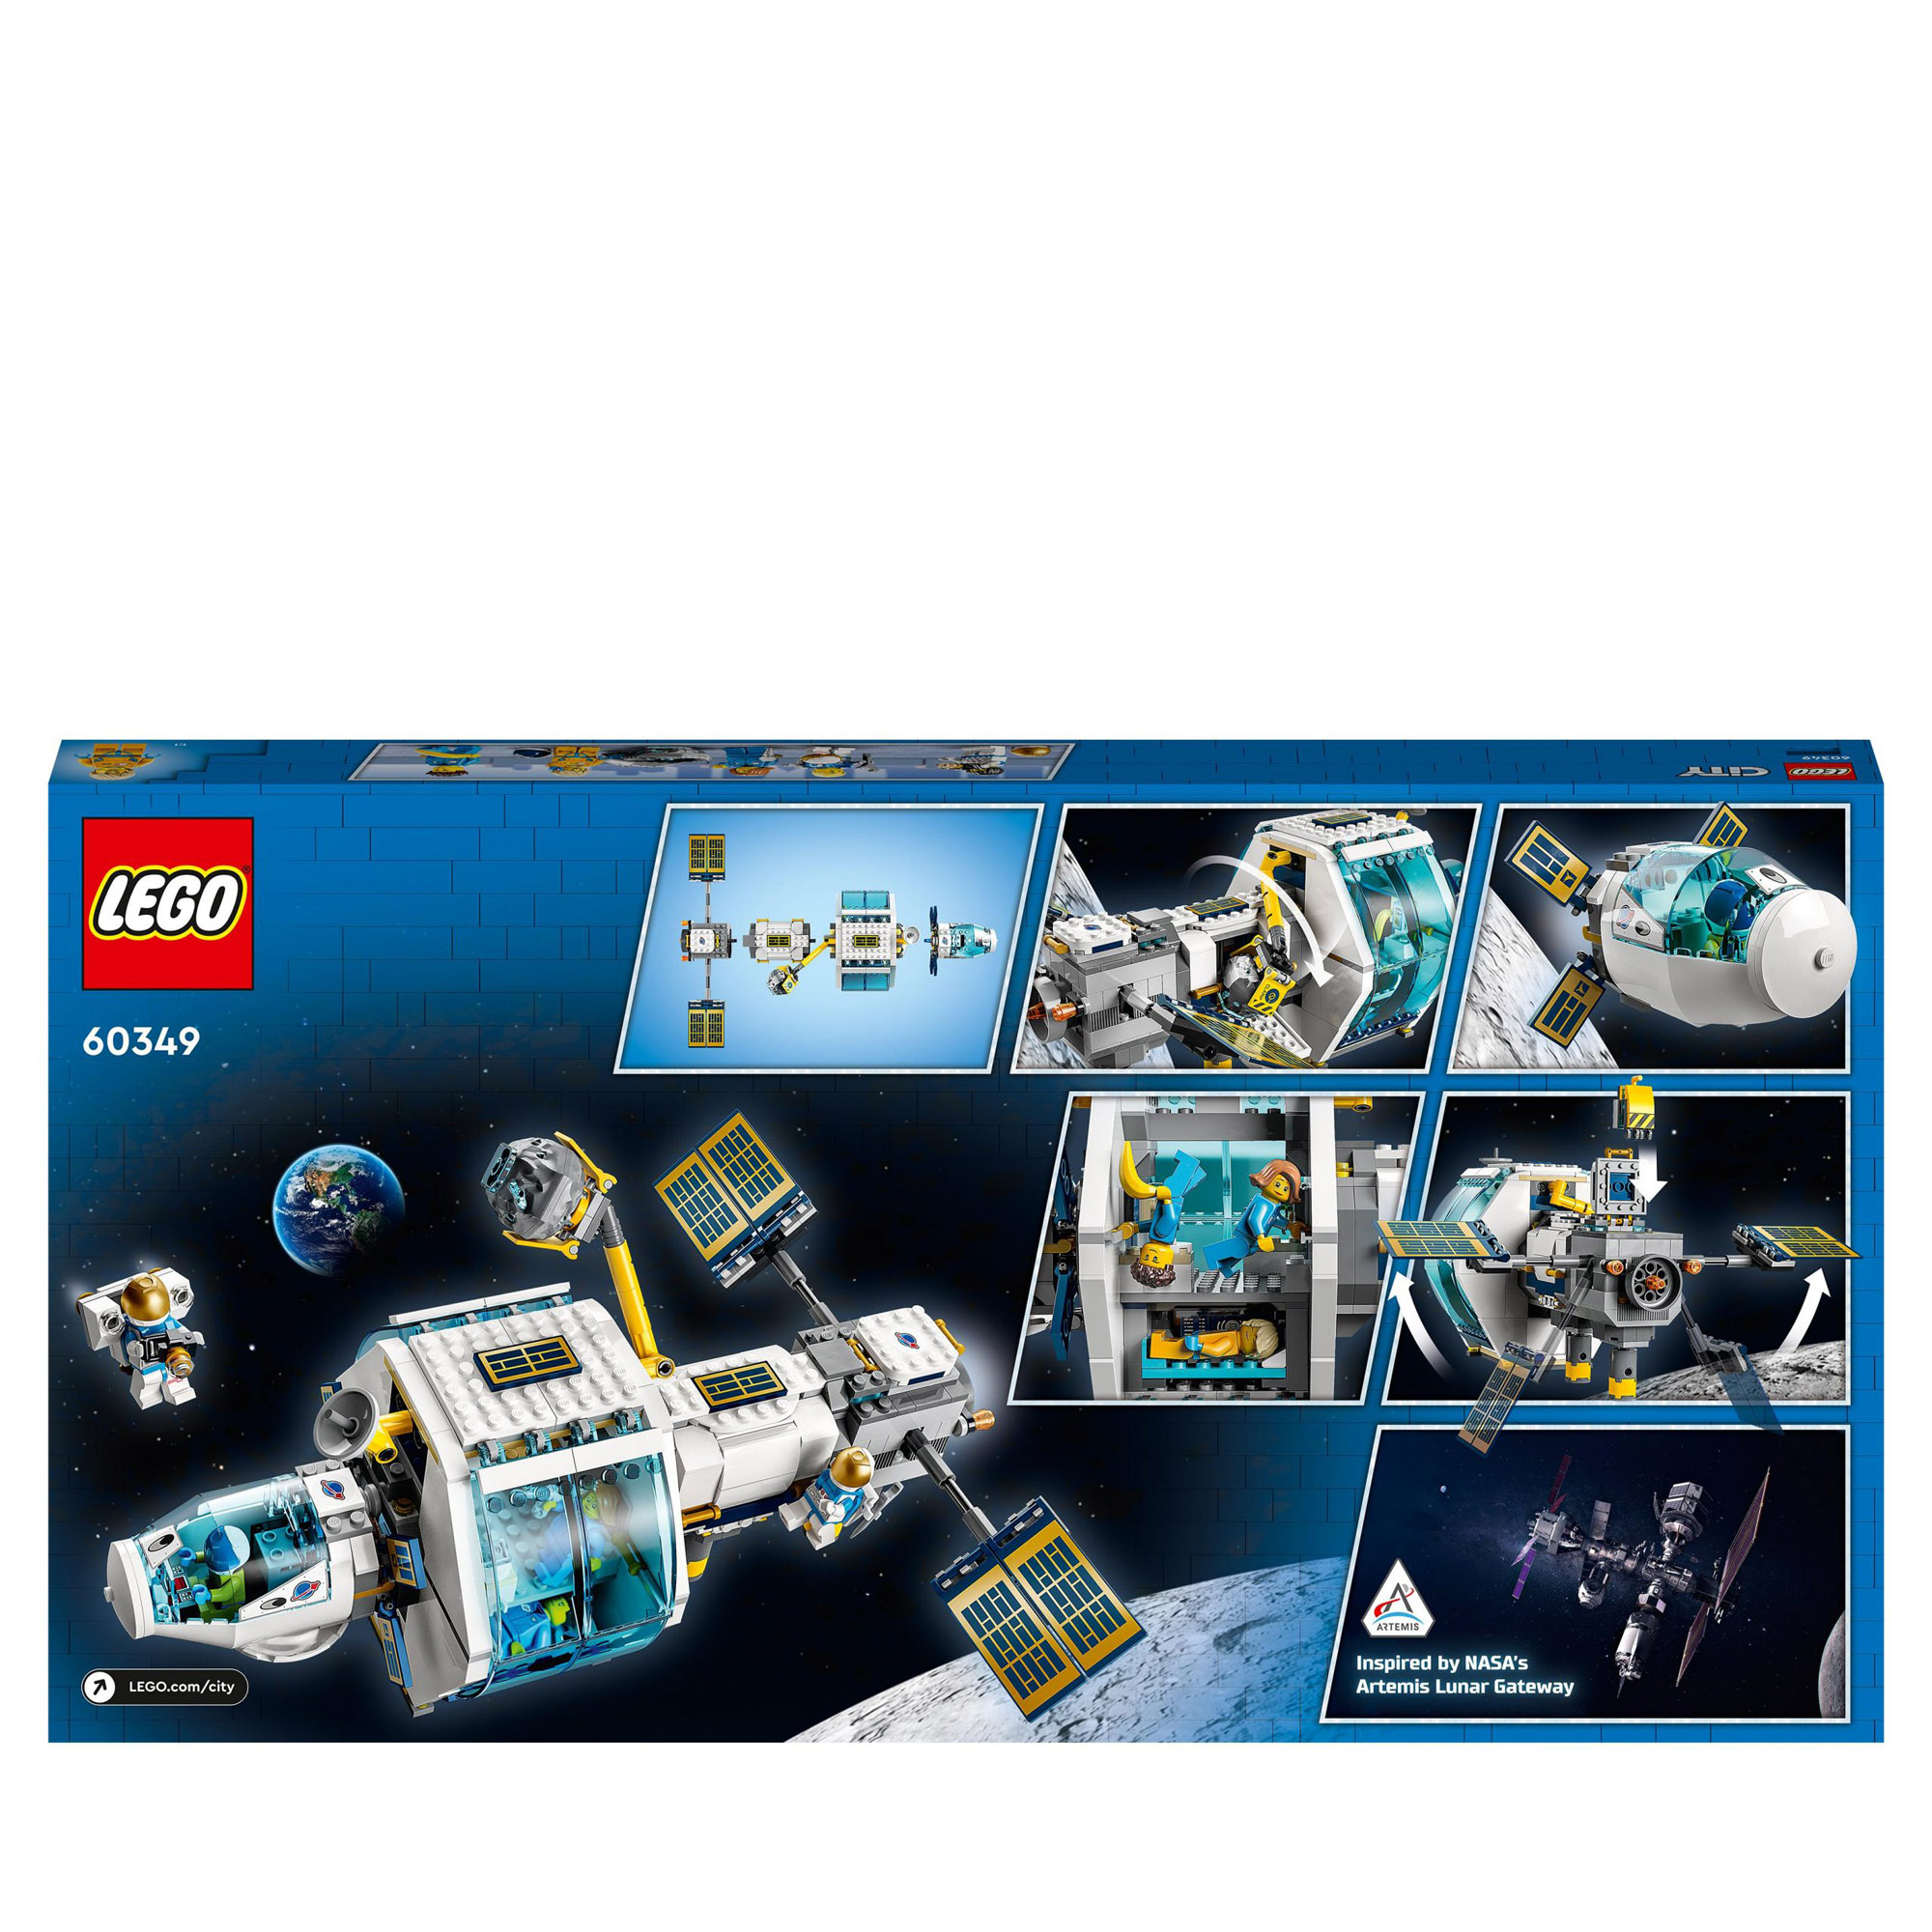 LEGO City 60349 Stazione spaziale lunare, base NASA con 5 minifigure di astronauti - LEGO